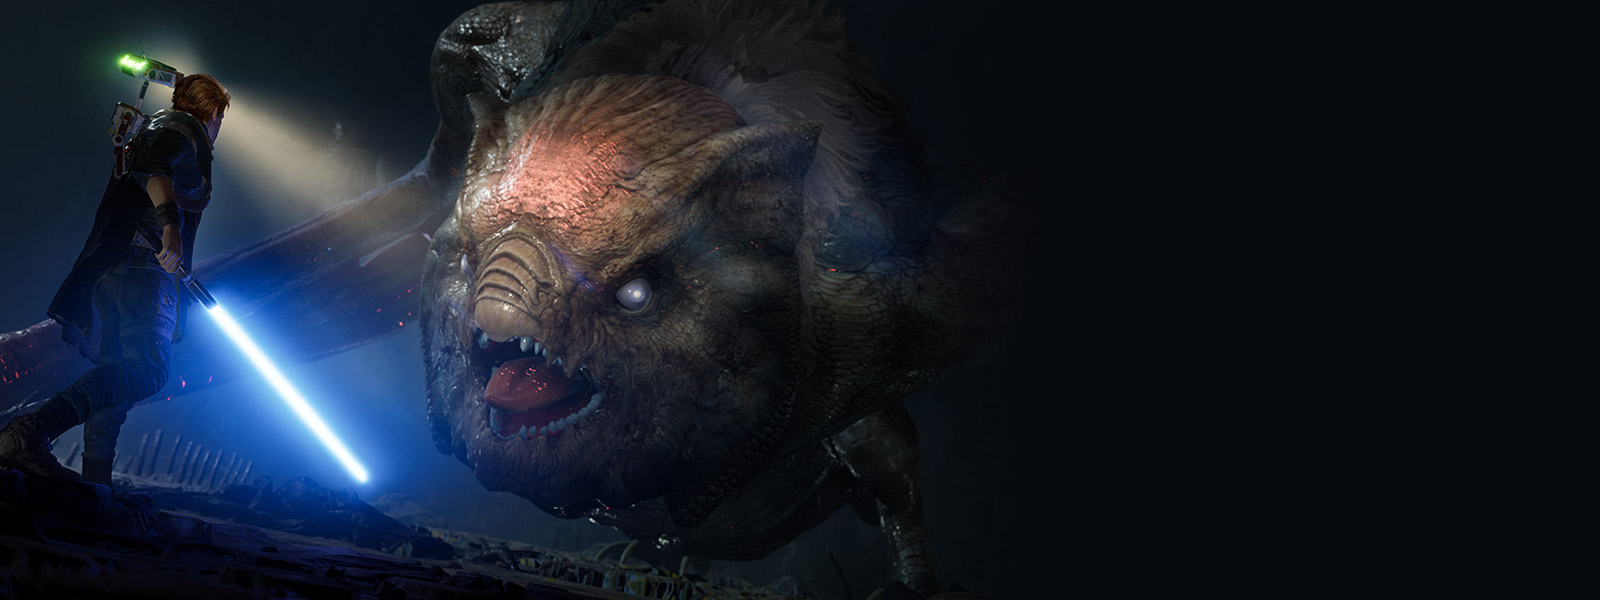 Cal Kestis fait face à un grand monstre en forme de chauve-souris appelé Gorgara dans une grotte